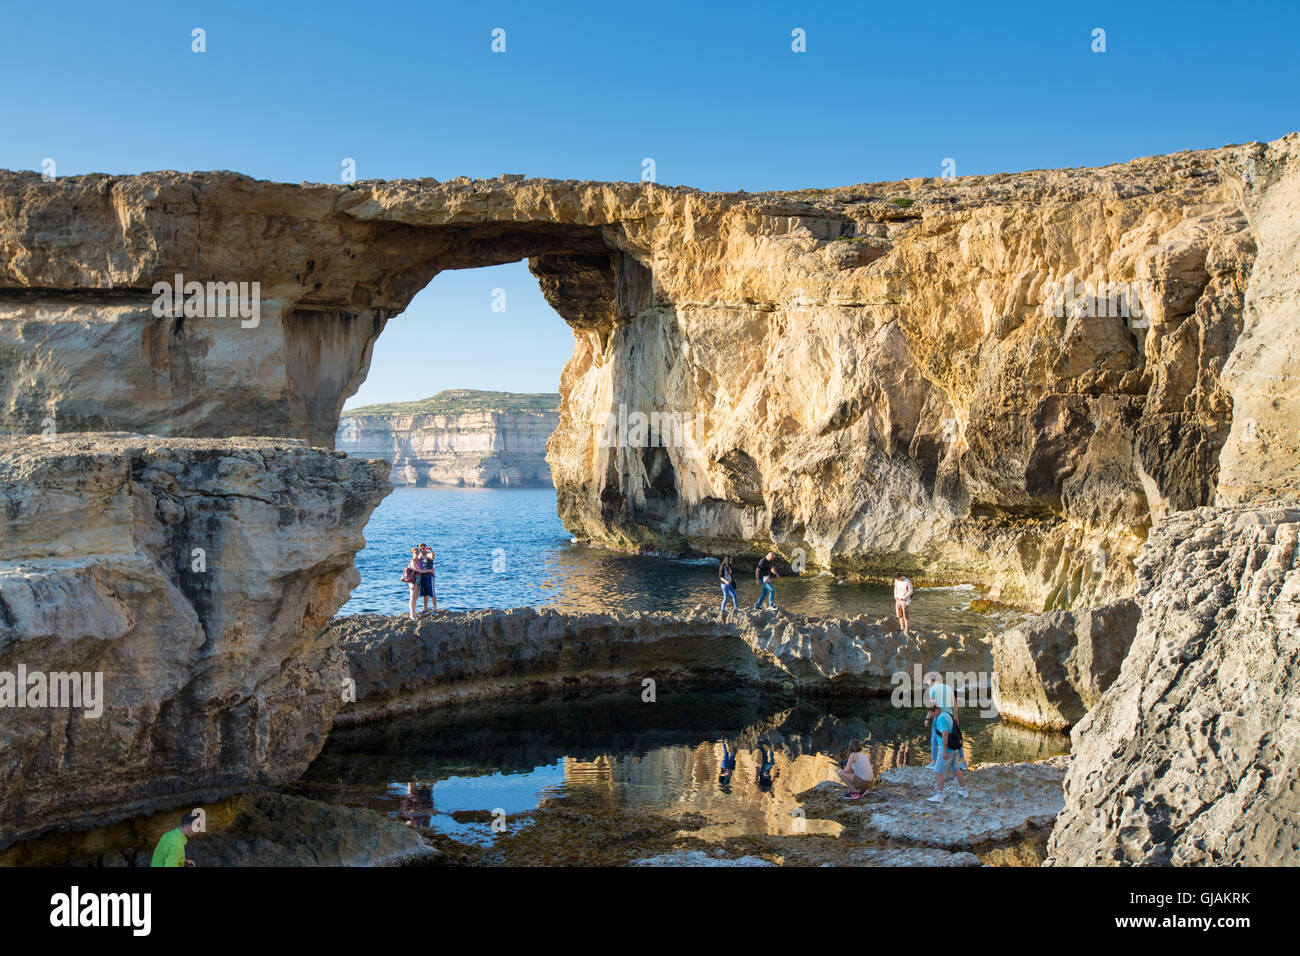 GOZO, MALTA - Juni 6: Touristen besuchen das Azure Window, Bogen einen berühmten Stein, am 6. Juni 2015 in Gozo, Malta. Stockfoto